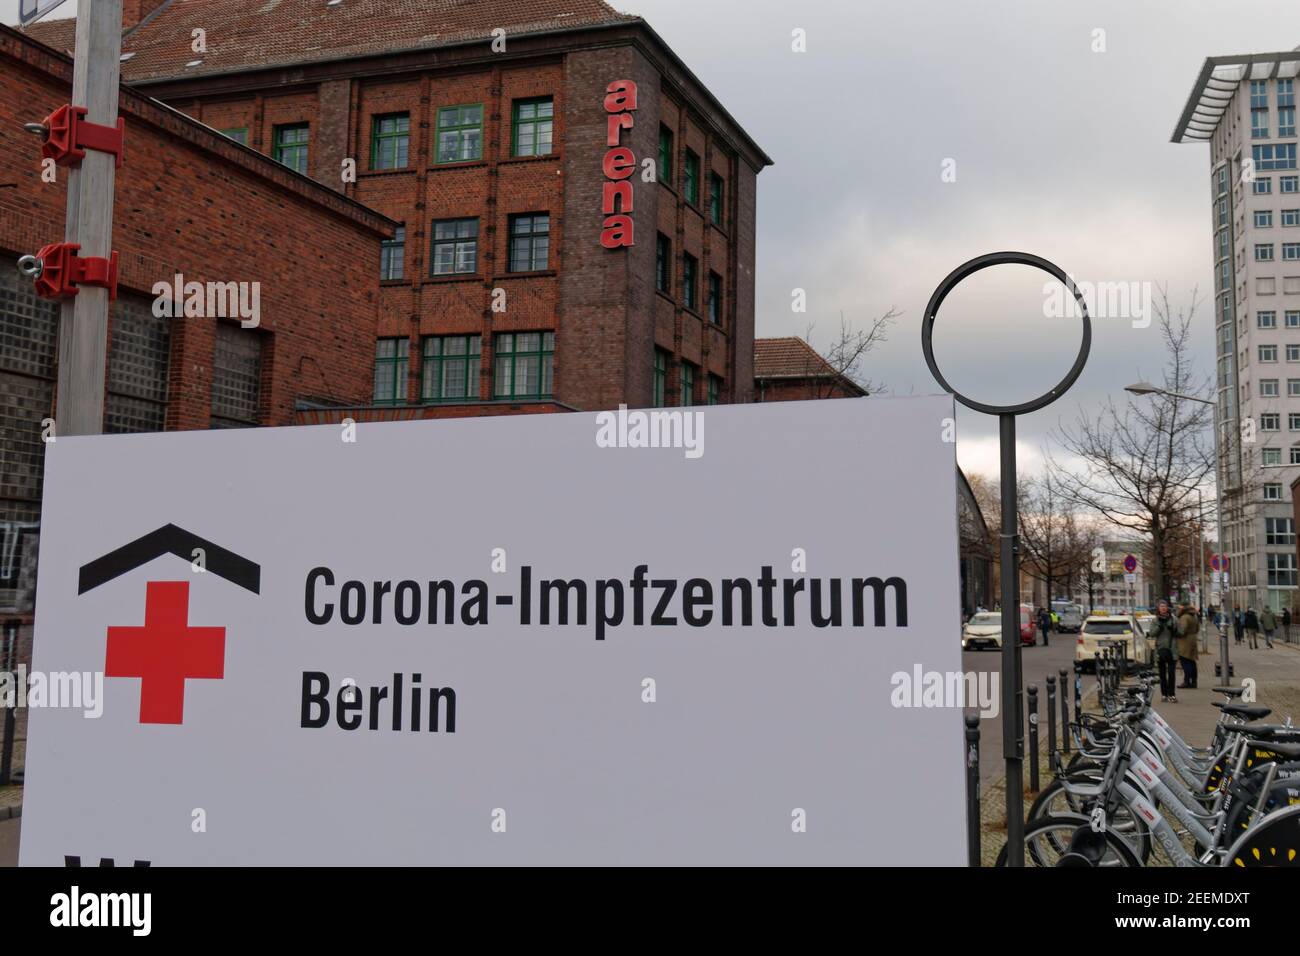 Corona Impfzentrum Arena Treptow, Berlino . Covid-19, Covid19, Coronakrise, Coronavirus, Corona-Virus, Corona-Krise, Impfung, impfen, Impfstoff, Senior Foto Stock